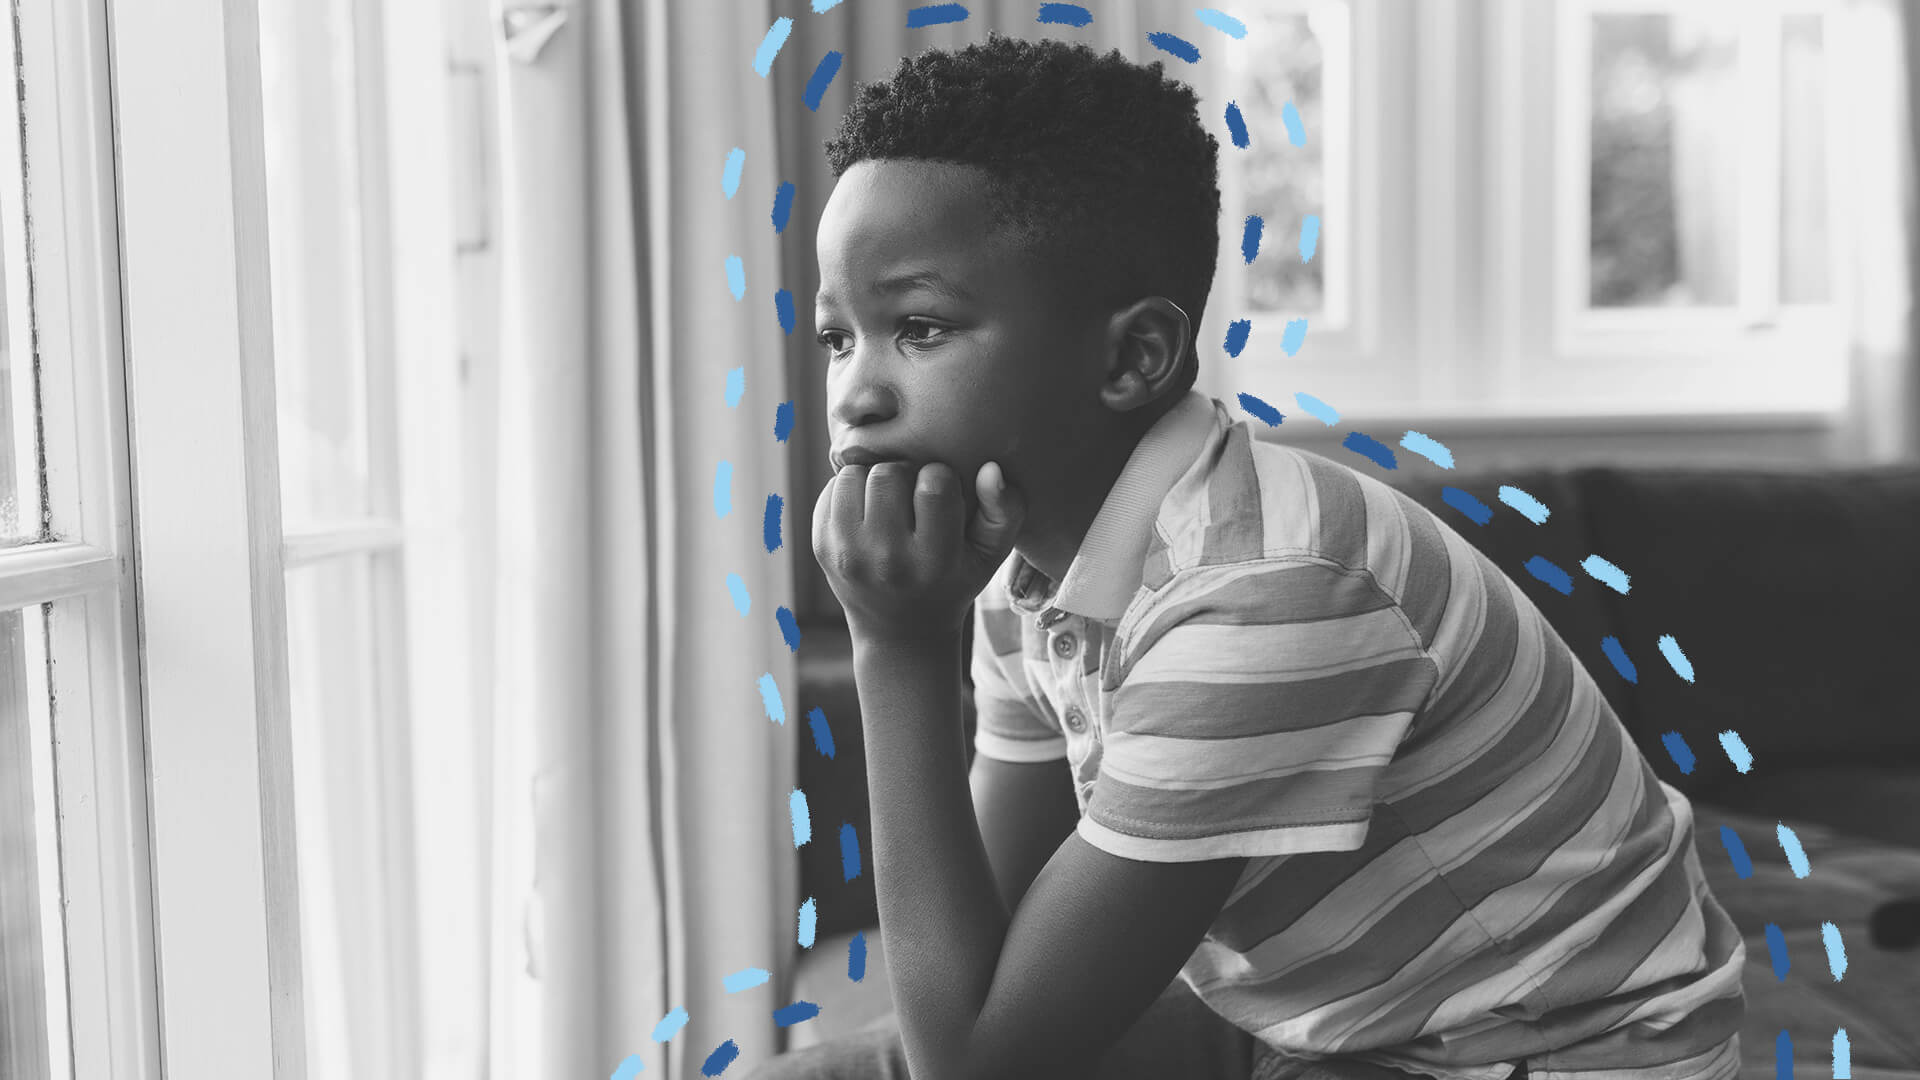 Na imagem, um menino negro usa uma camiseta listrada. Ele olha para a janela com dúvida. A imagem está em preto e branco e possui intervenções de rabiscos coloridos.